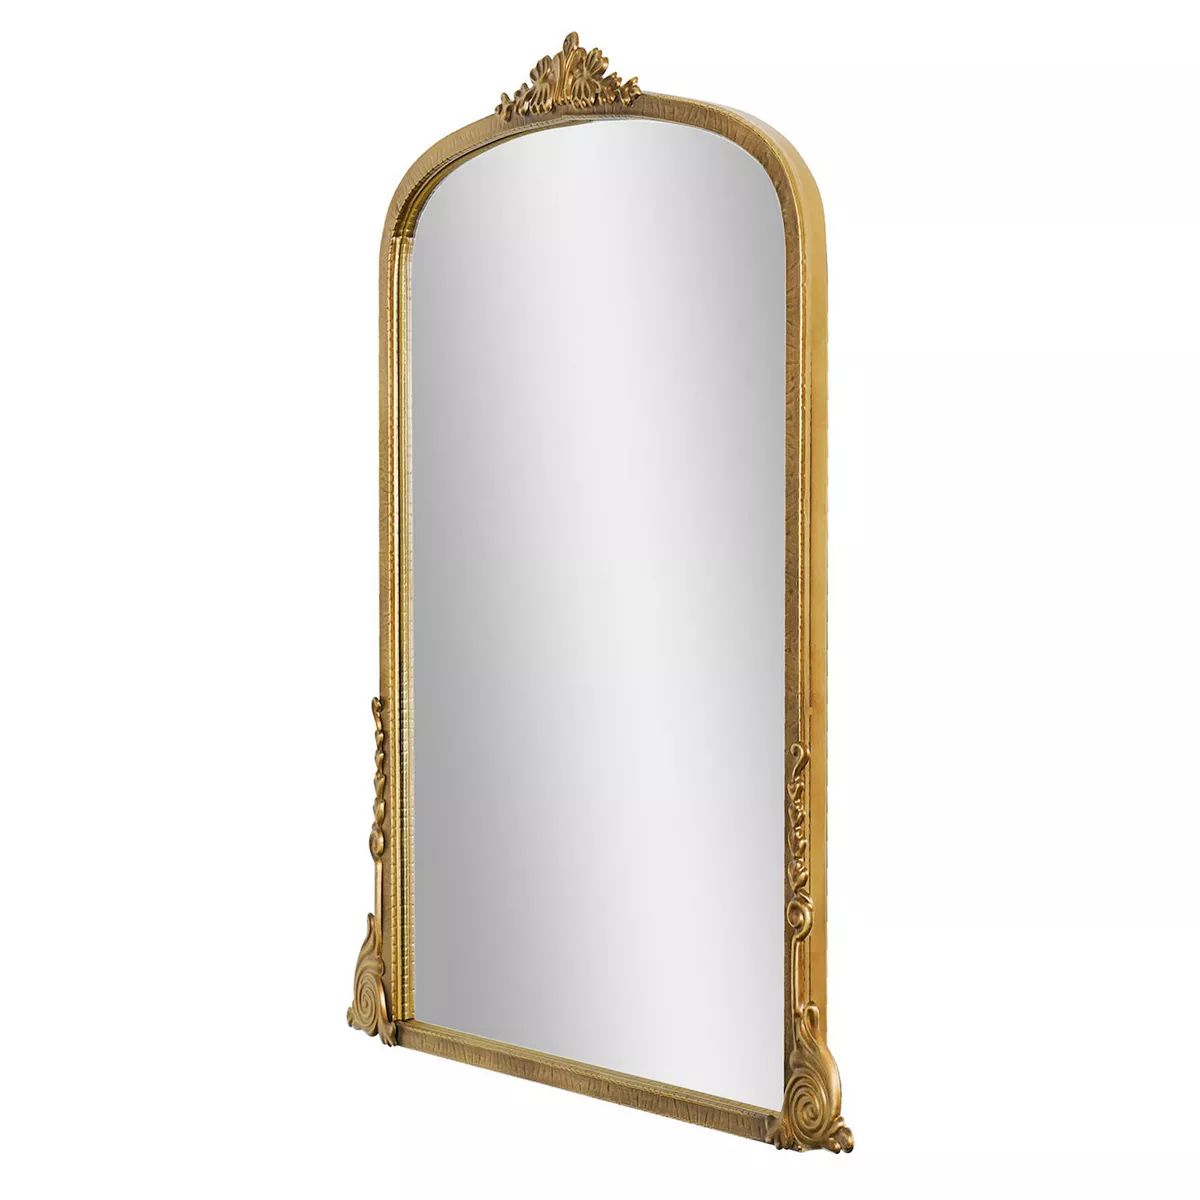 Head West Brass Ornate Wall Mirror | Kohl's